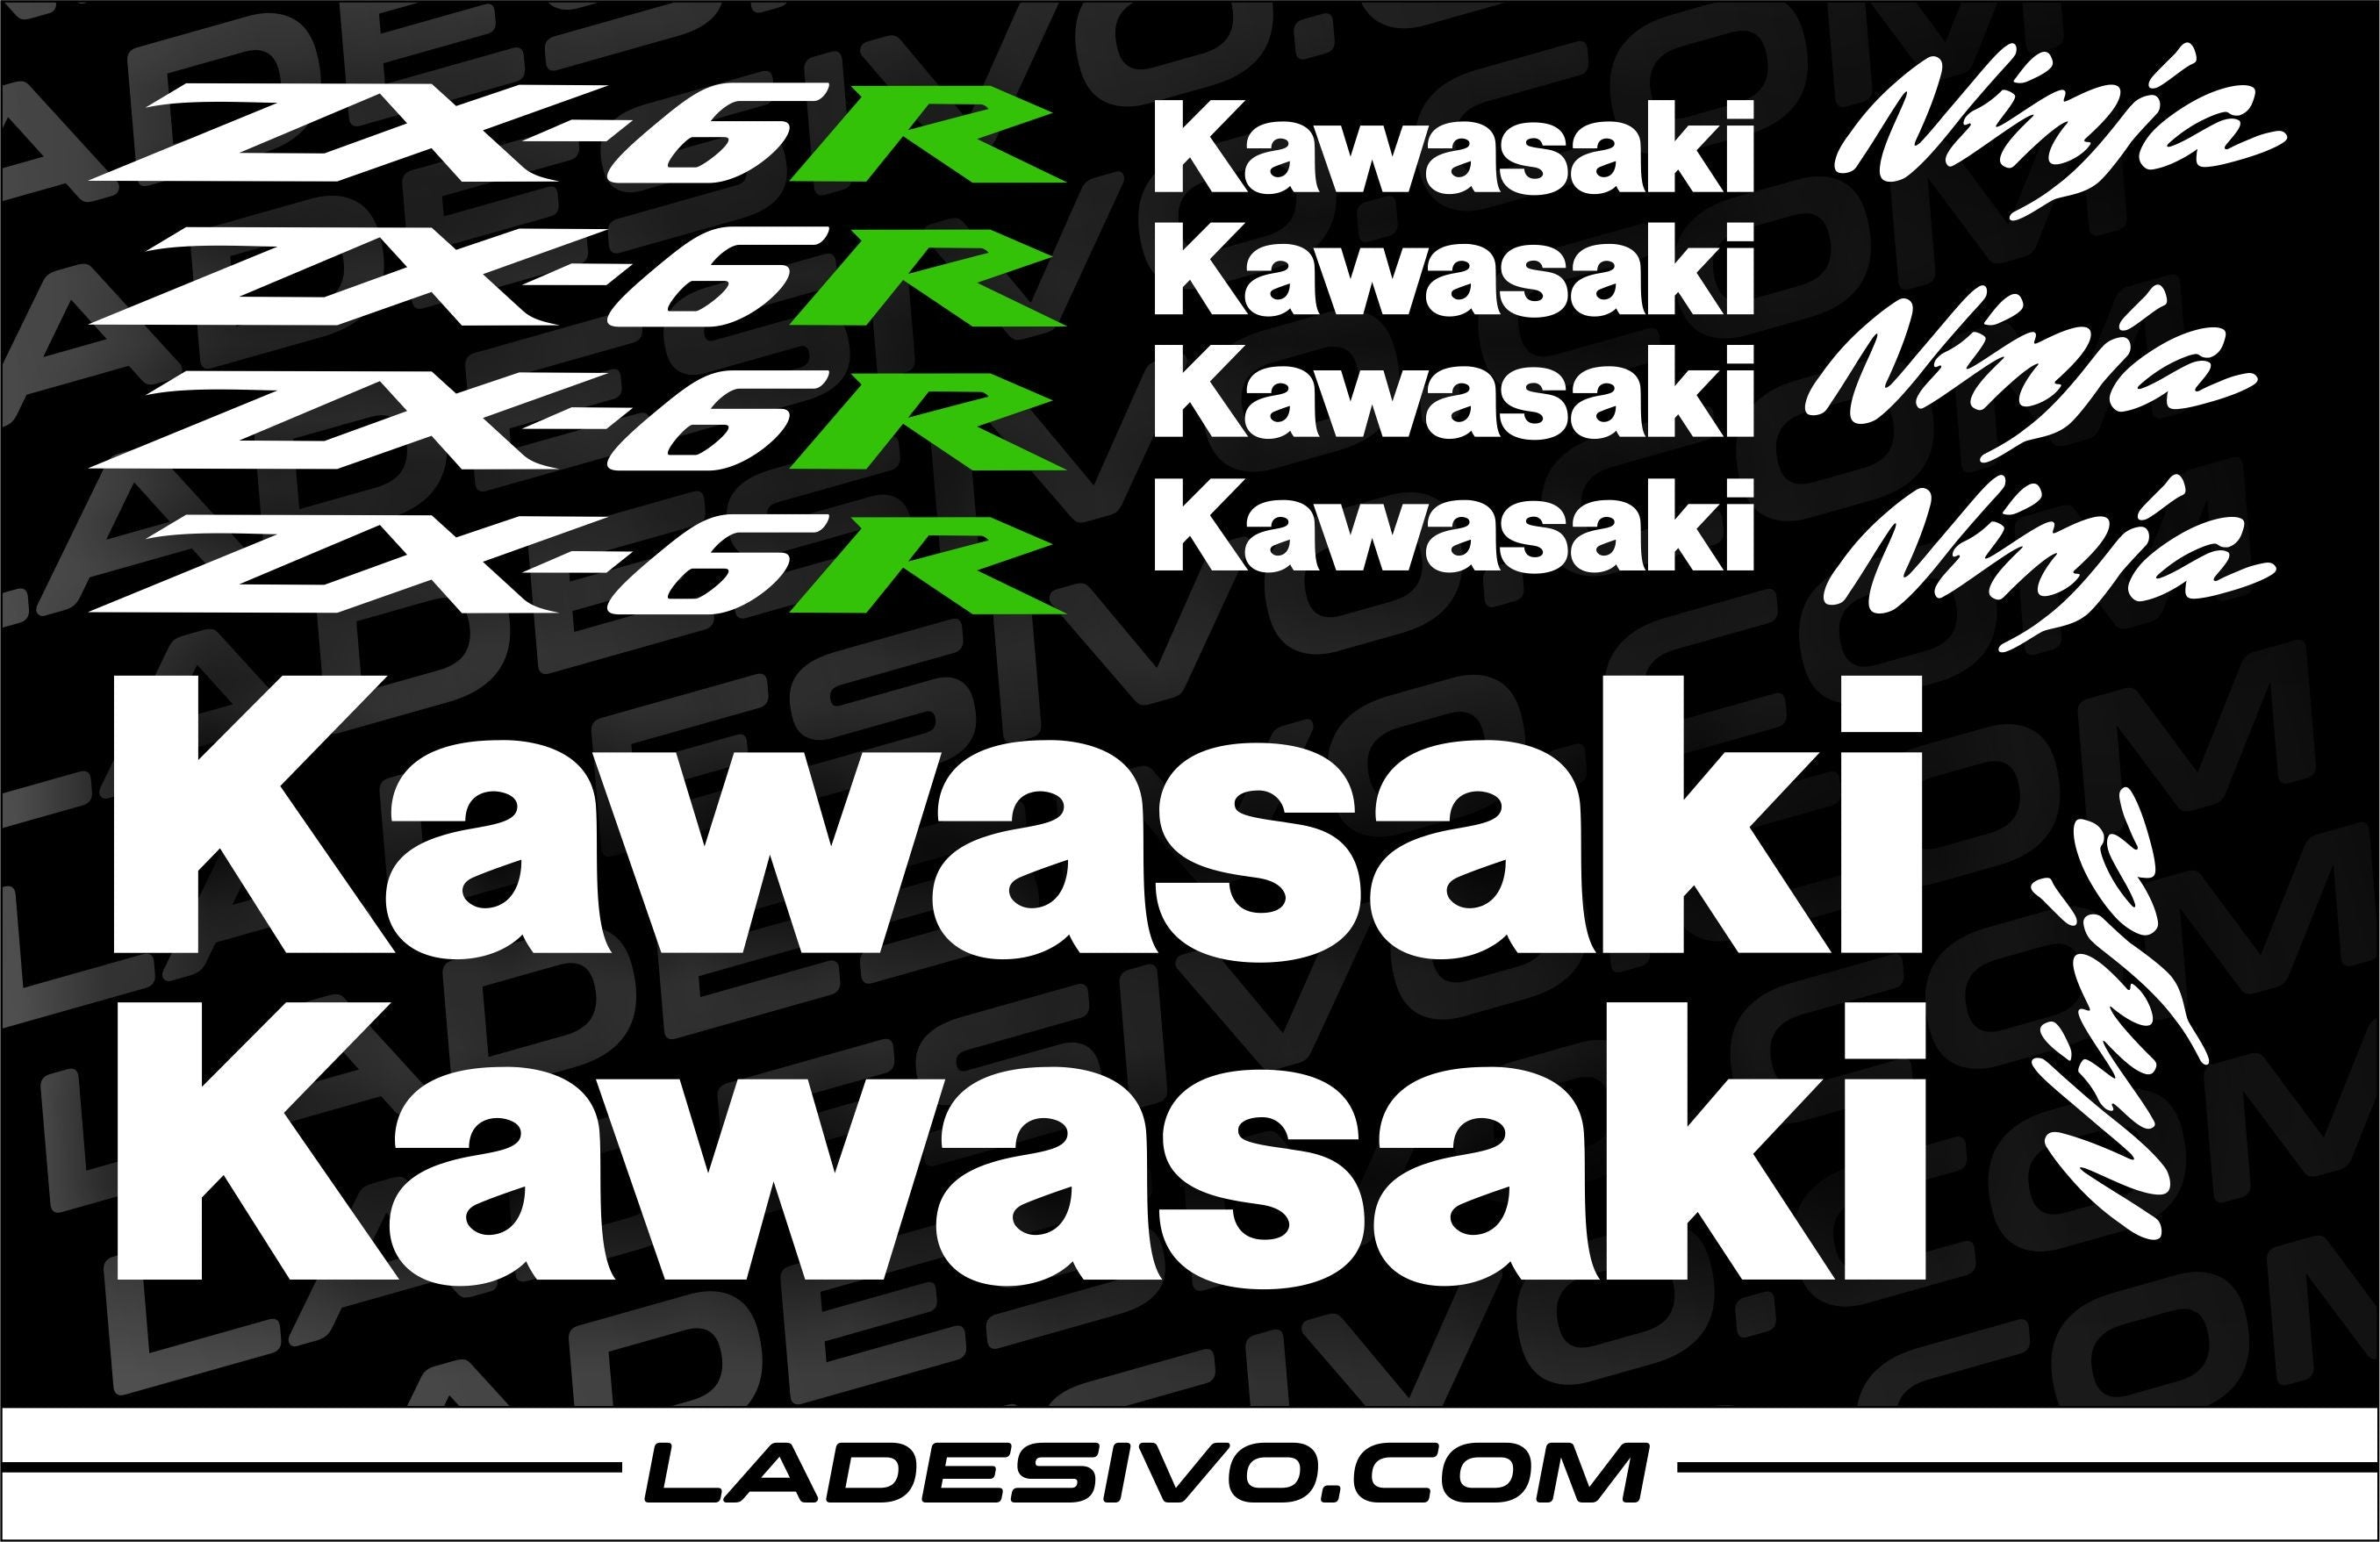 Kit adesivi/stickers/decalcomanie per moto Kawasaki zx6r - 14 pezzi –  L'adesivo.com